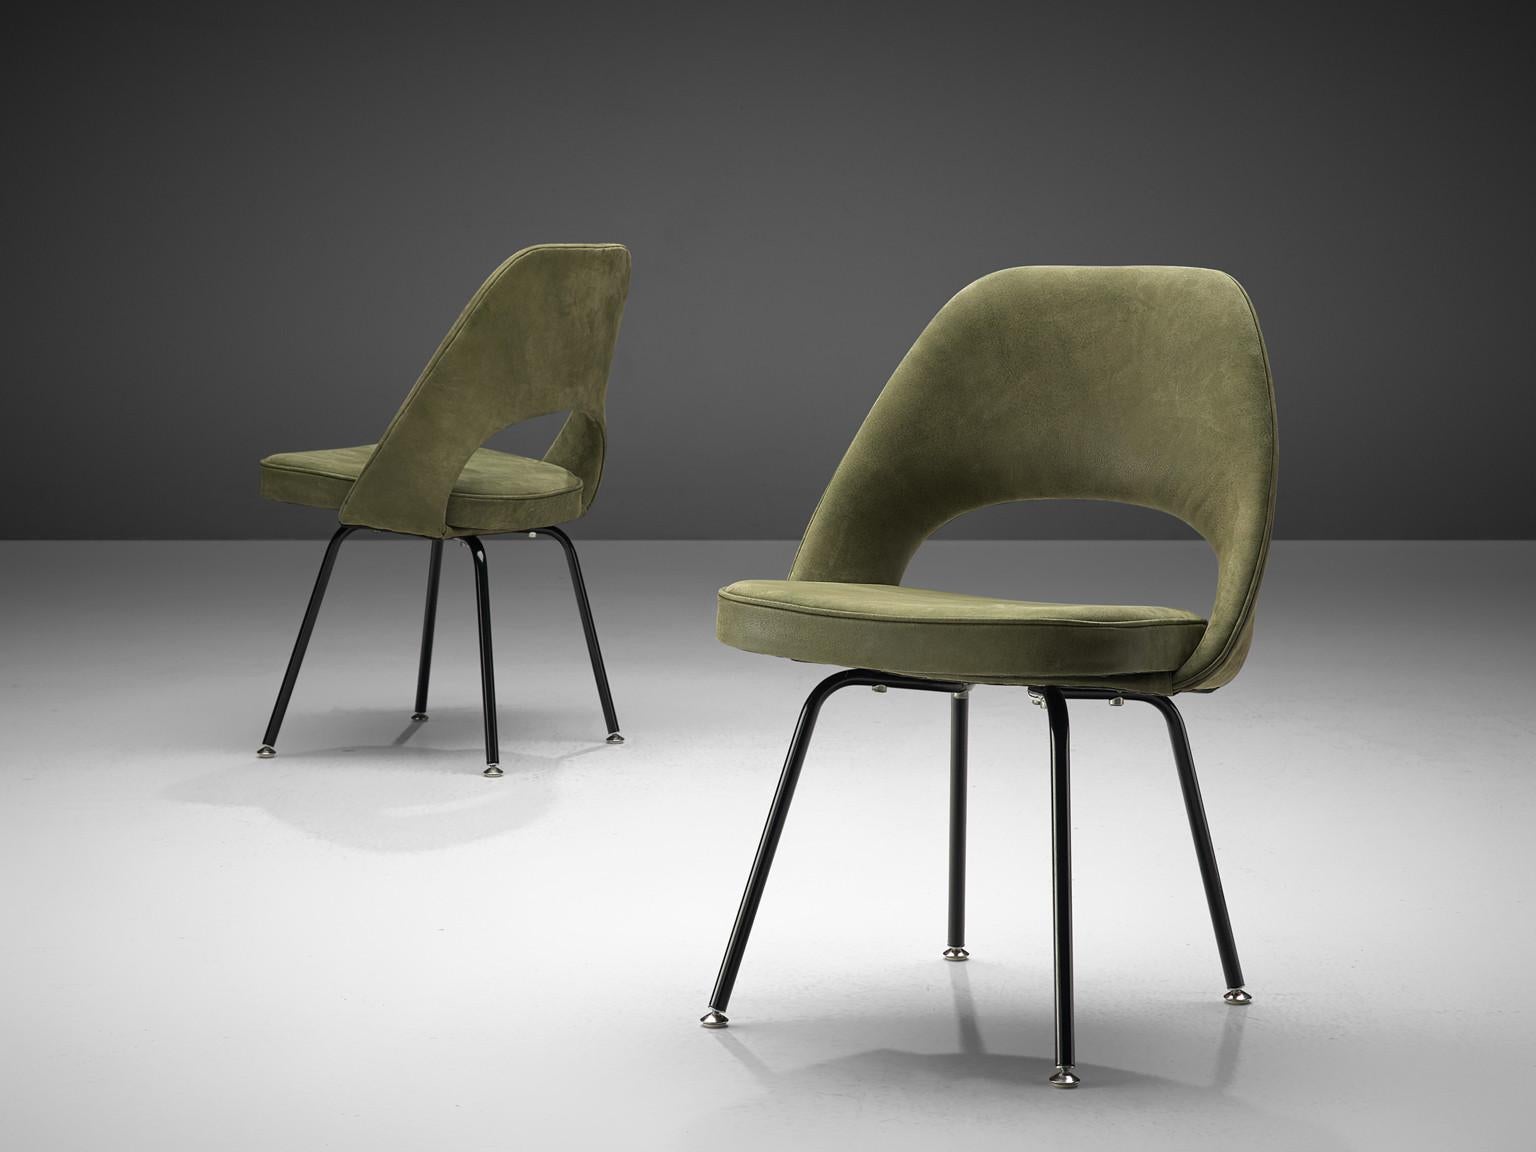 Eero Saarinen pour Knoll International, paire de chaises de salle à manger '72', acier laqué noir, rembourrées en cuir vert, États-Unis, design 1948, production ultérieure

Paire de chaises de forme organique conçues par Eero Saarinen. Une forme